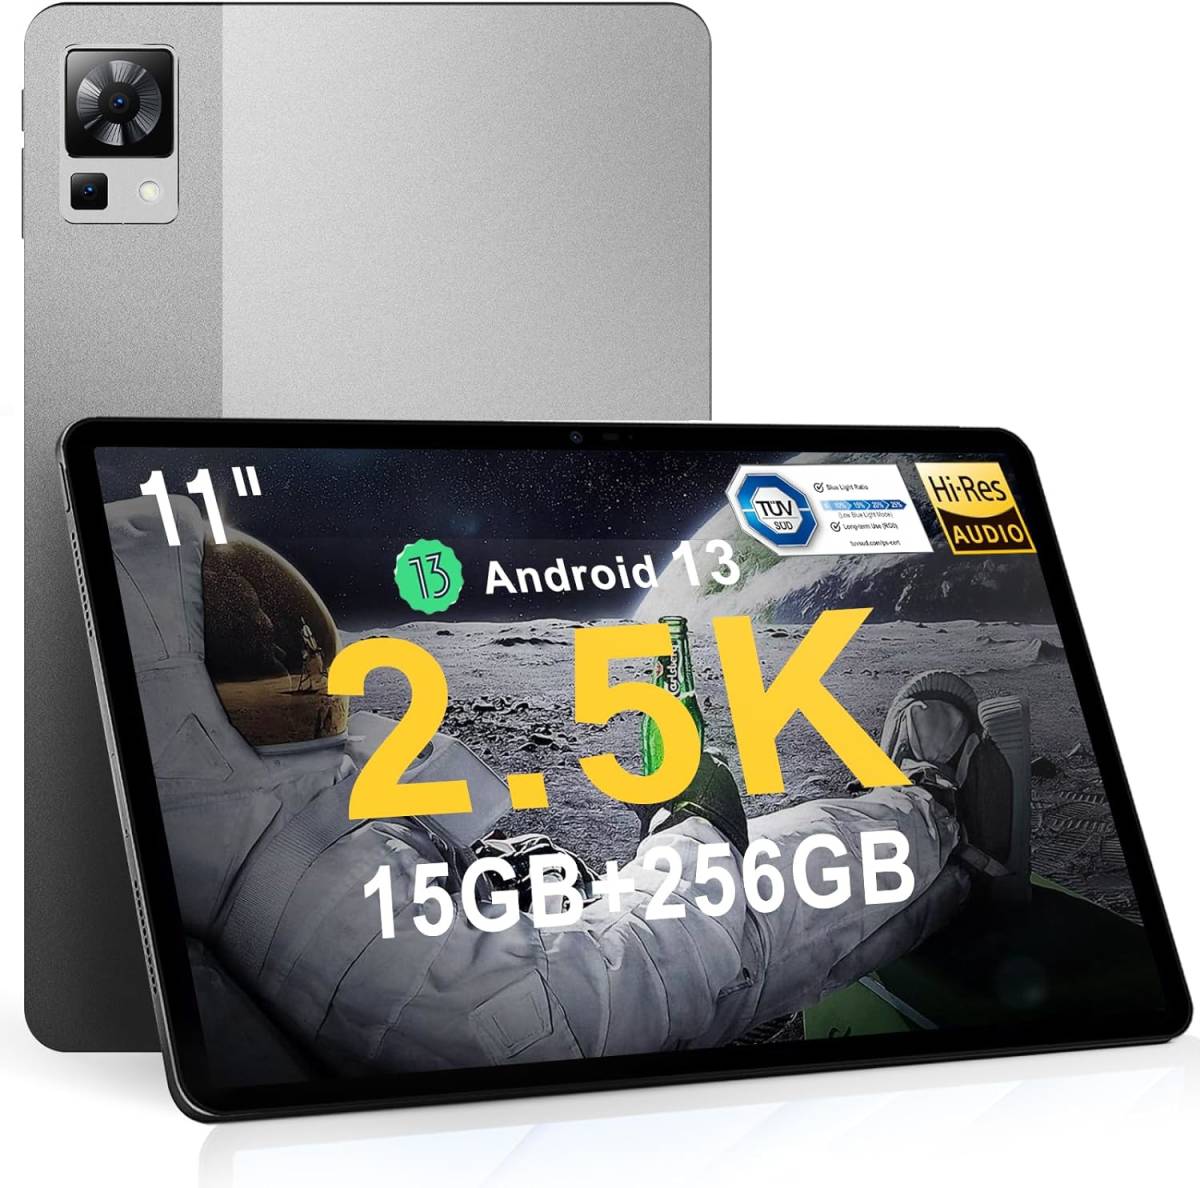 タブレット Android 12 15GB RAM(8+7拡張)+256GB - Androidタブレット本体